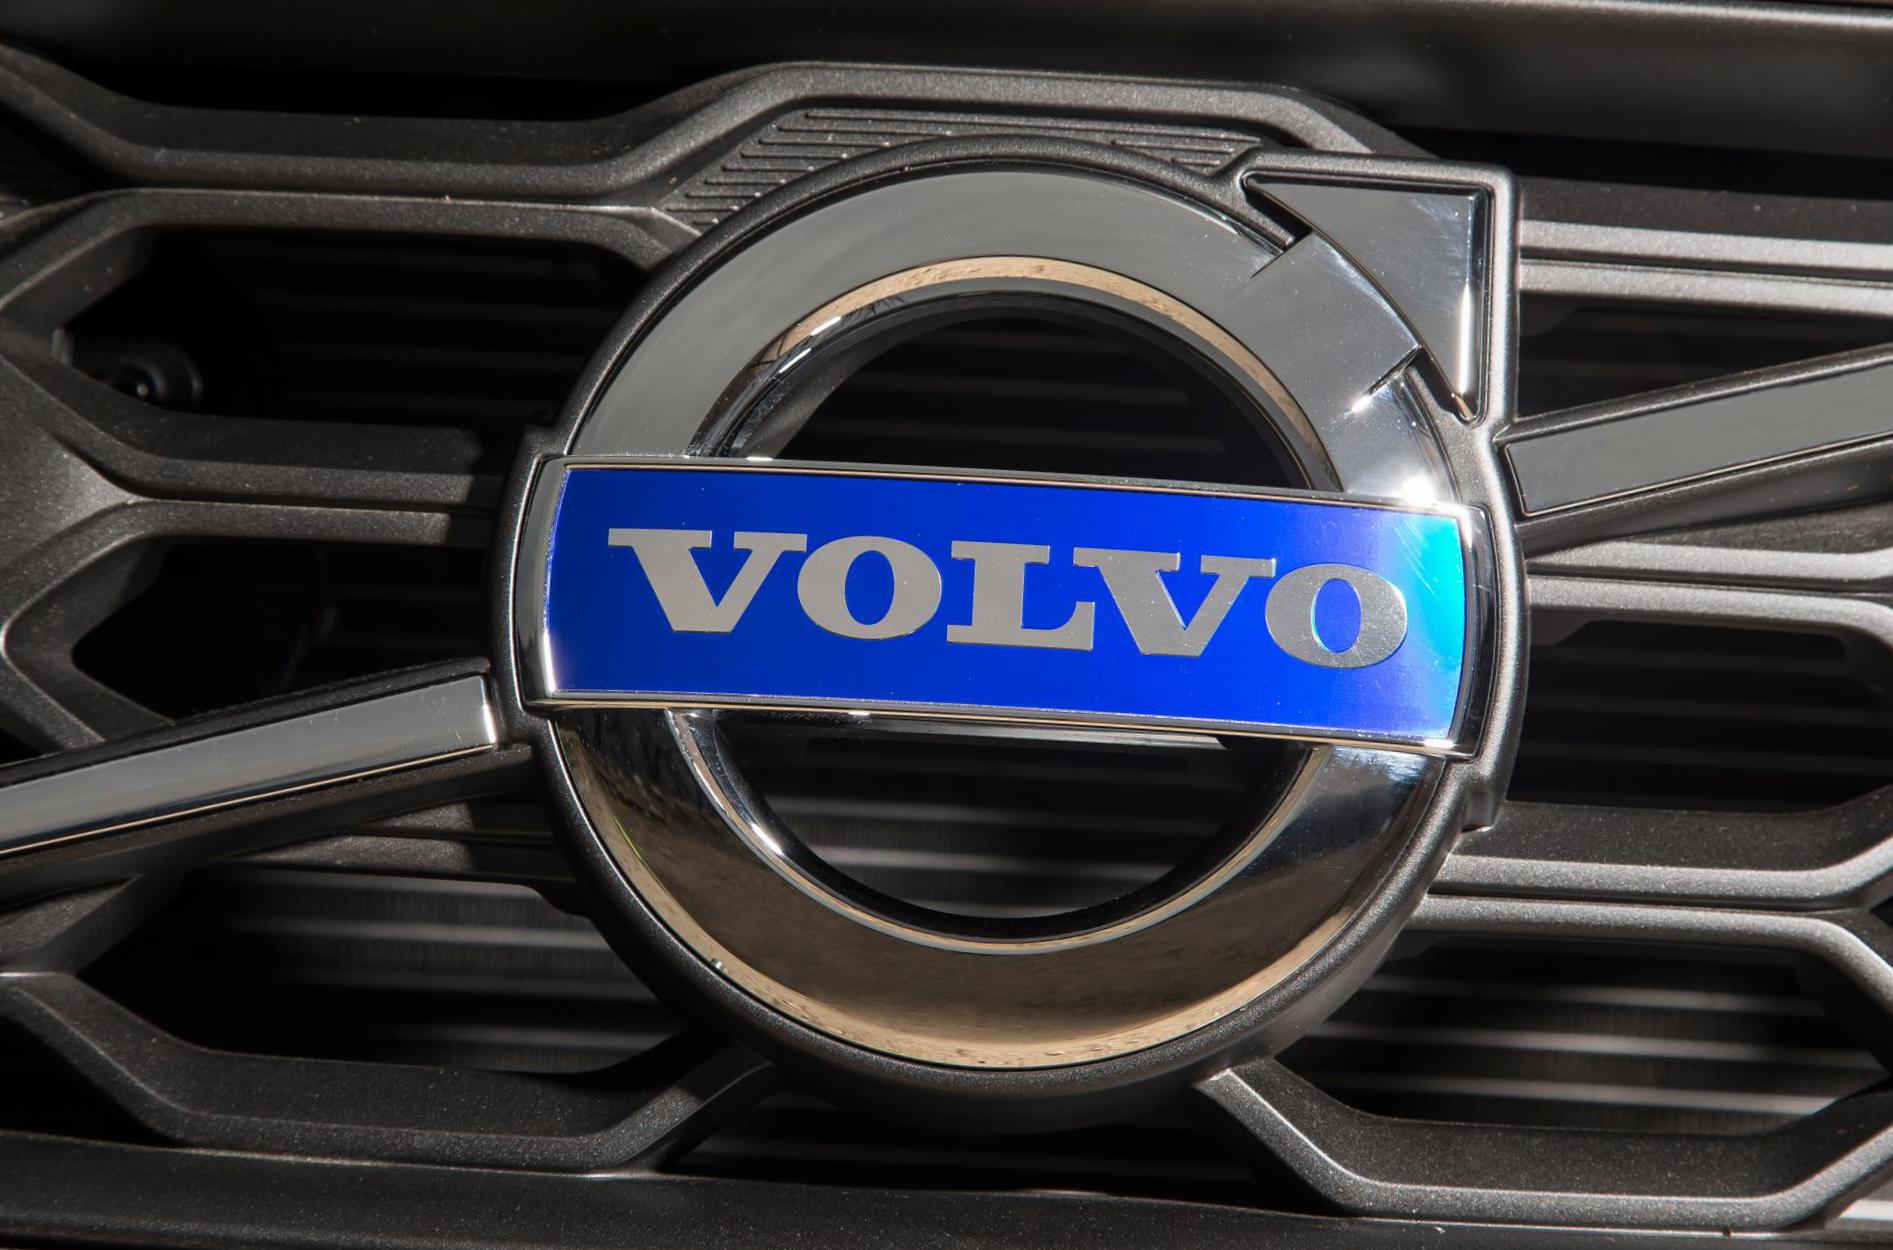 V60 Cross Country Volvo sale 2013